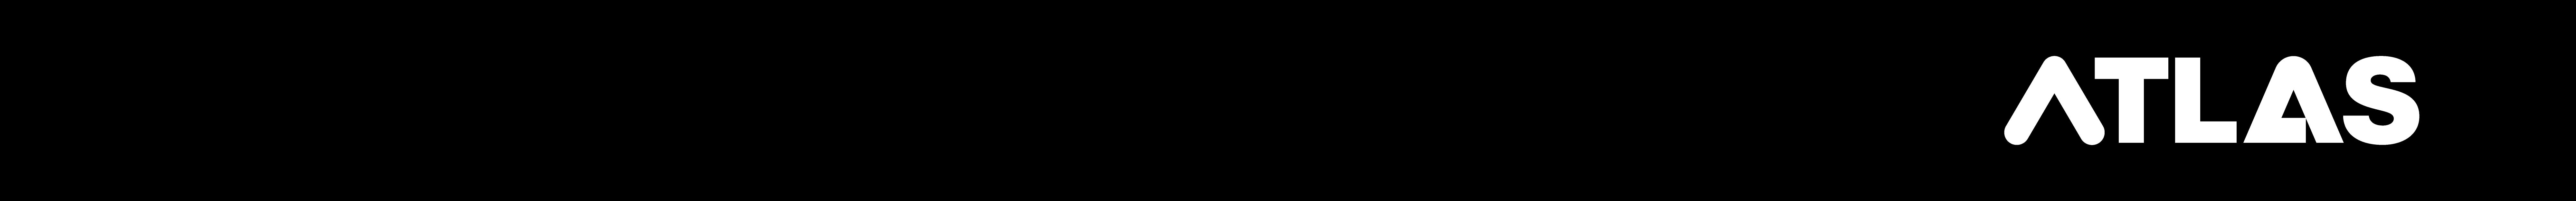 ATLAS Logo on black banner